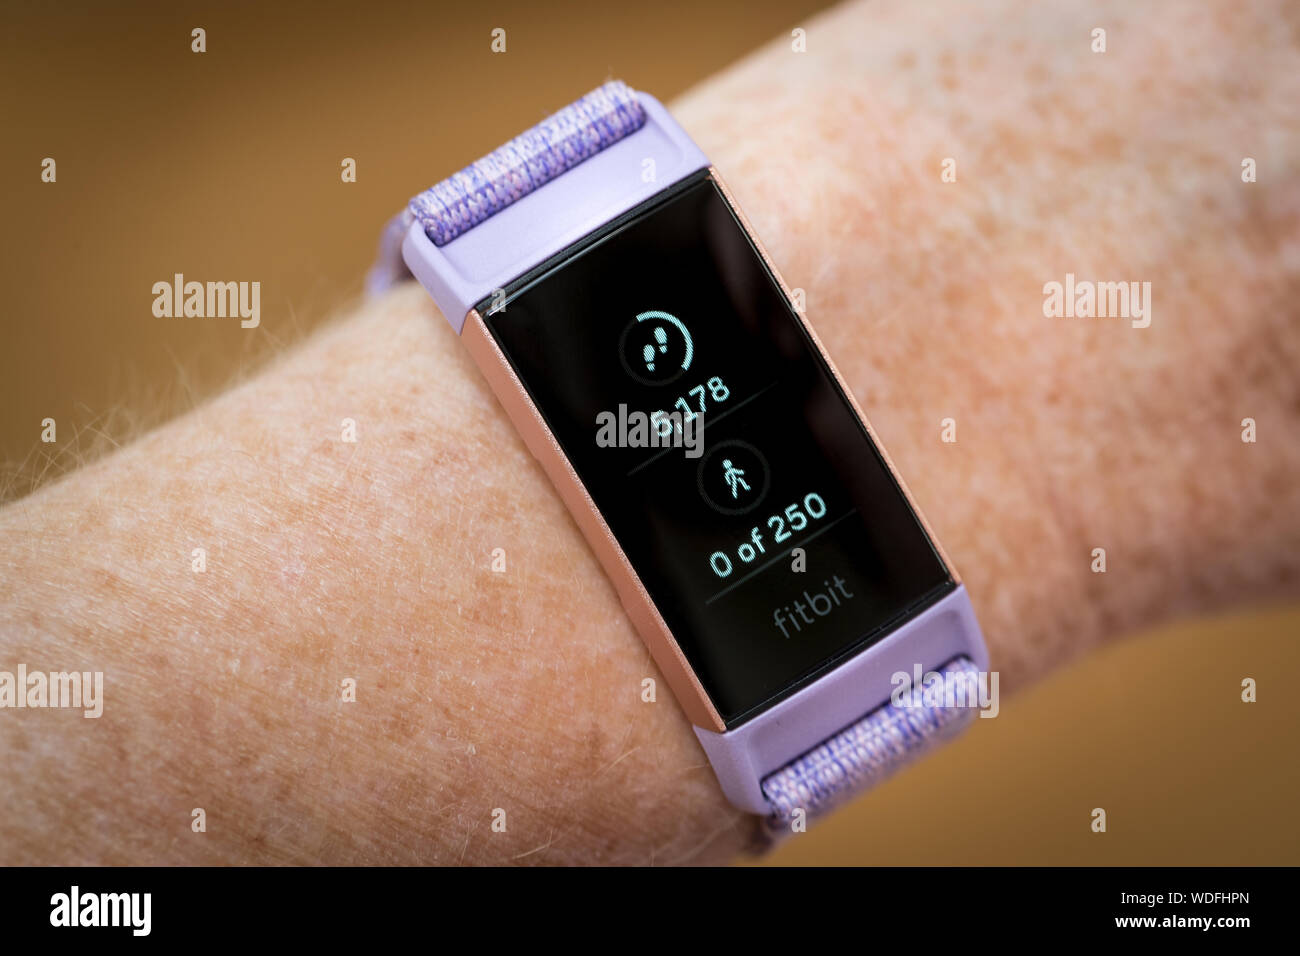 Une femme à la recherche de ses pas compter sur une charge 3 tracker Fitbit fitness watch Banque D'Images